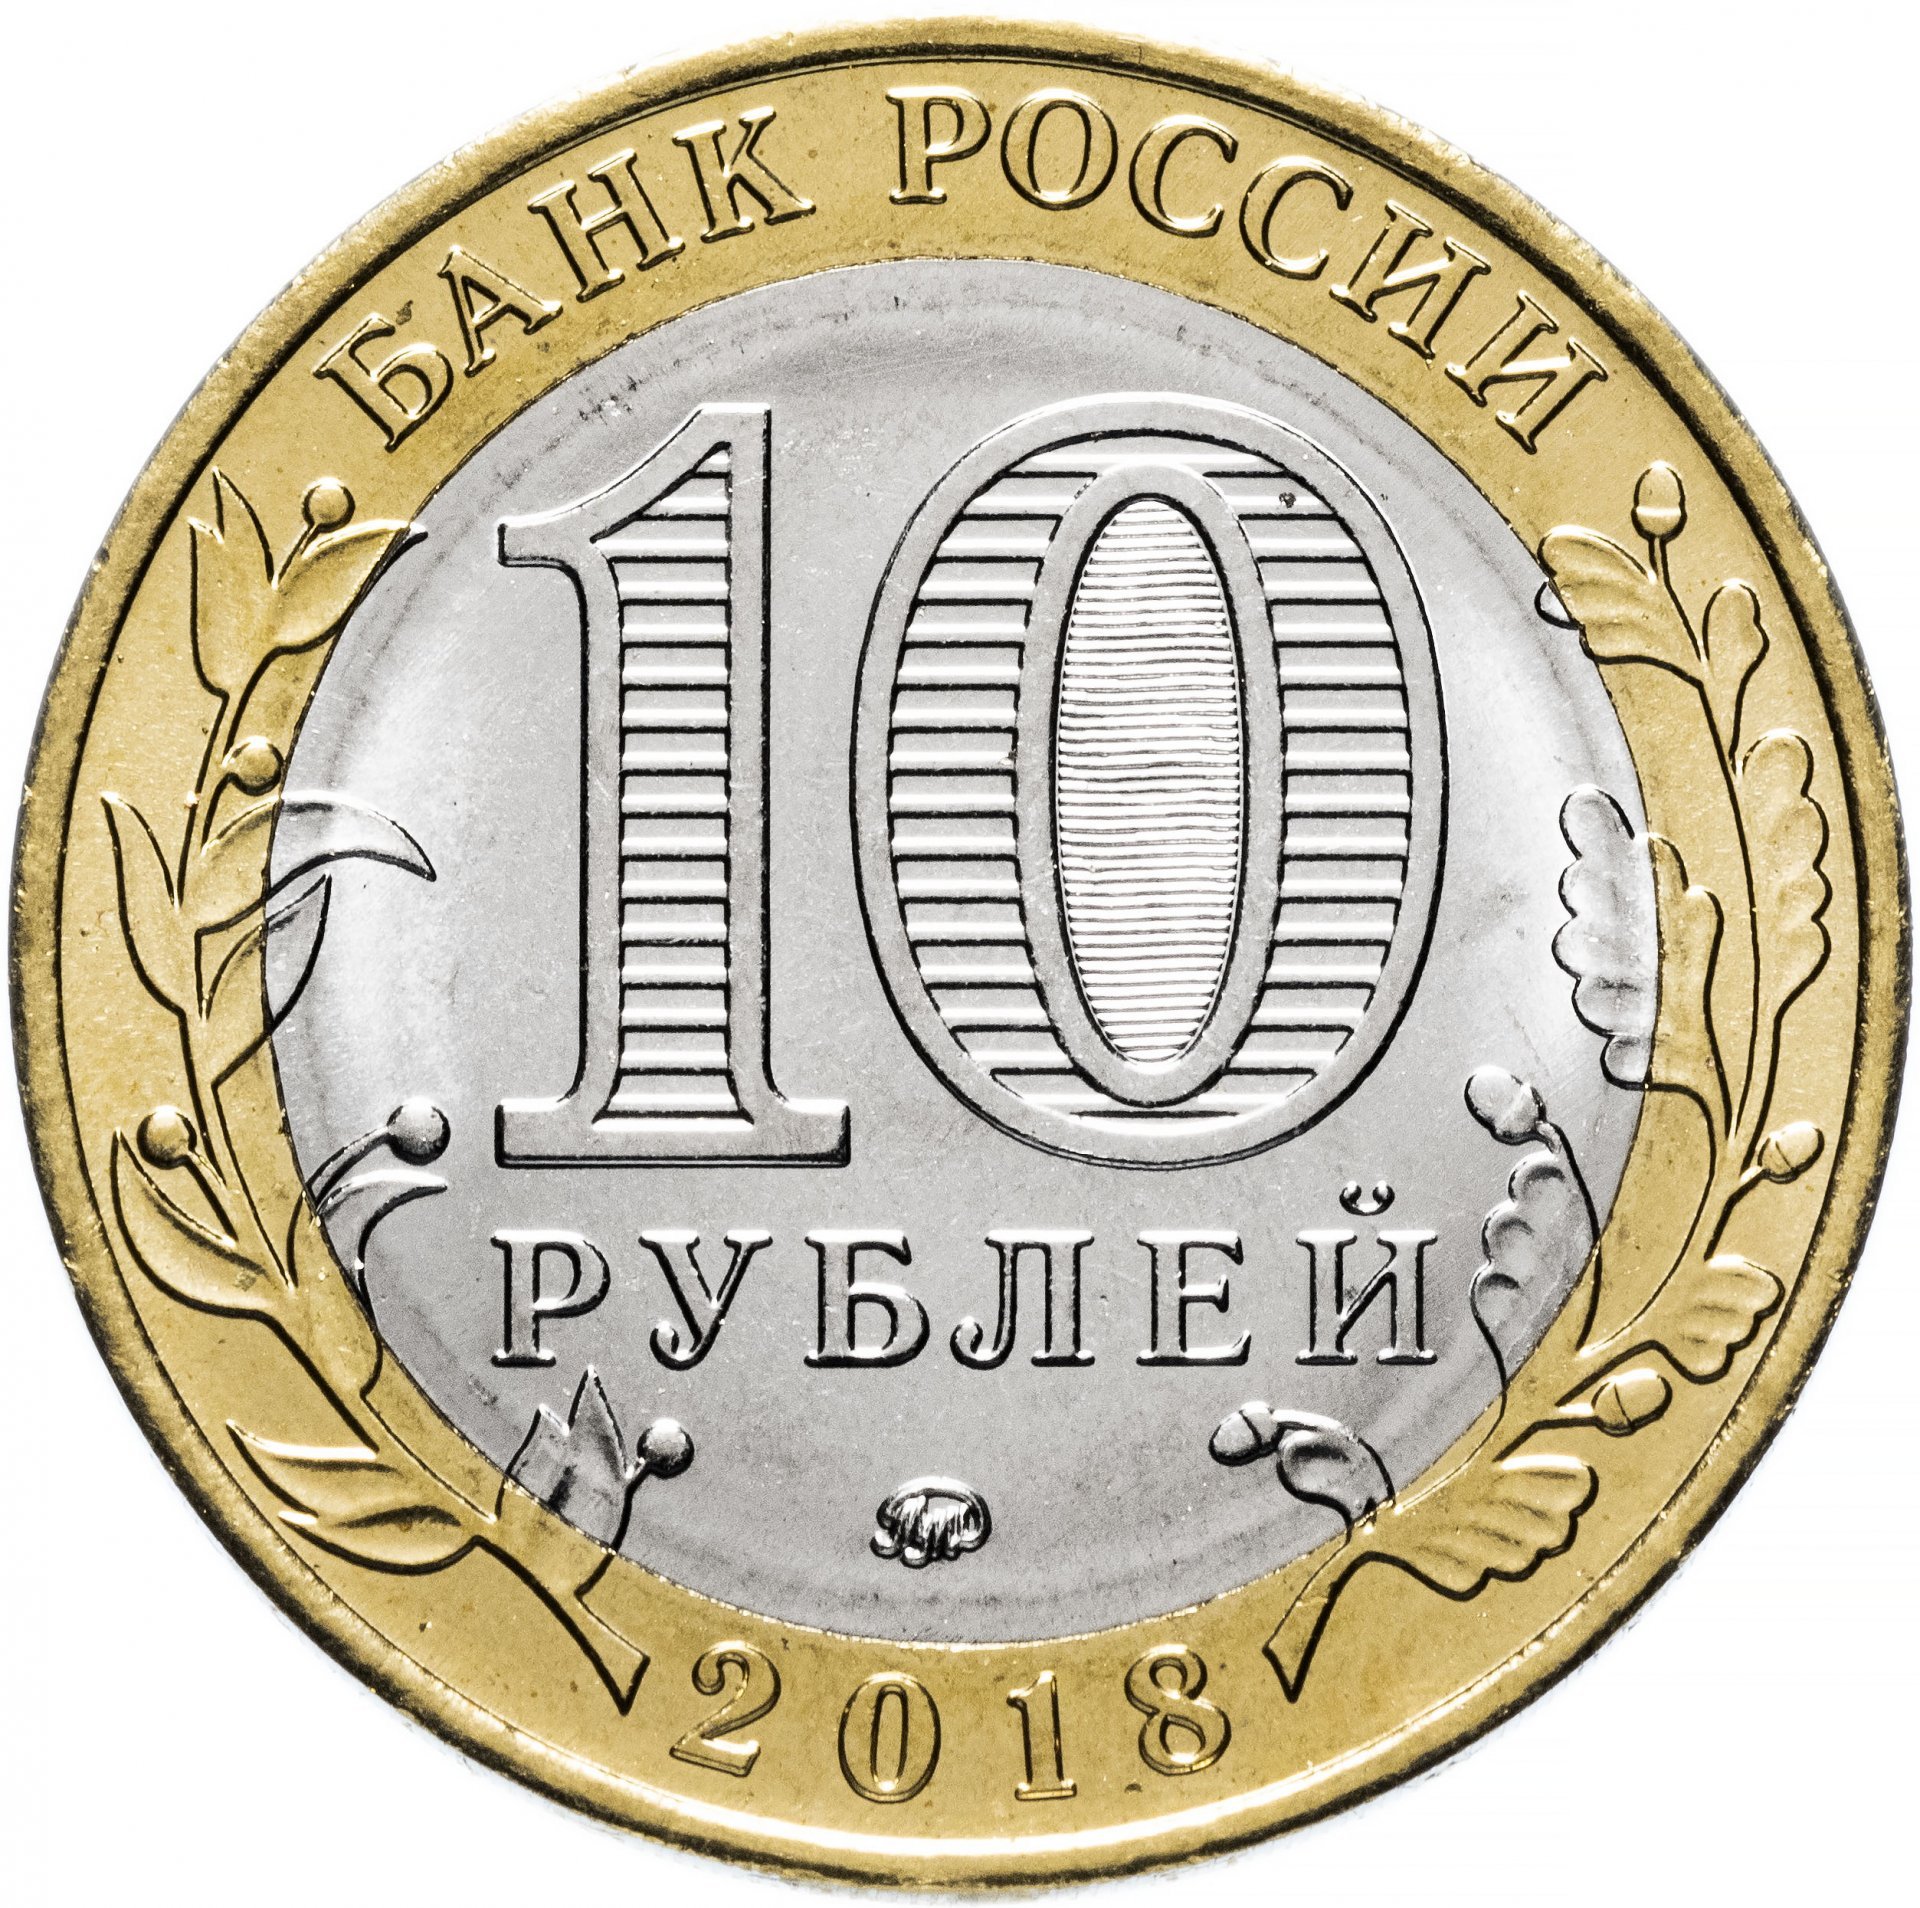 10 рублей 2018 год ММД Россия. г. Гороховец. Биметалл. Юбилейная монета.